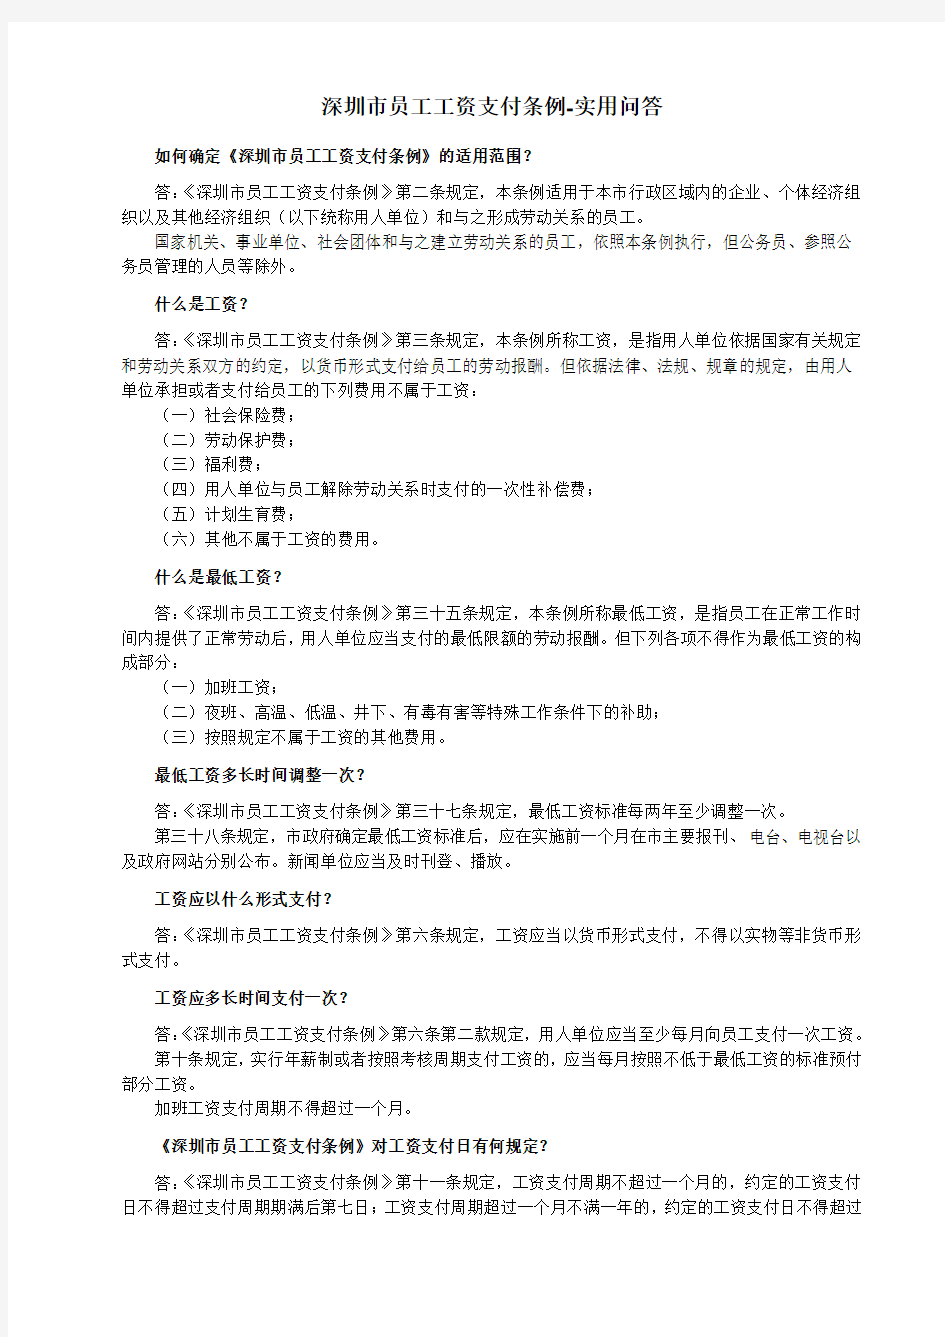 深圳市员工工资支付条例-实用问答-2011-11-22